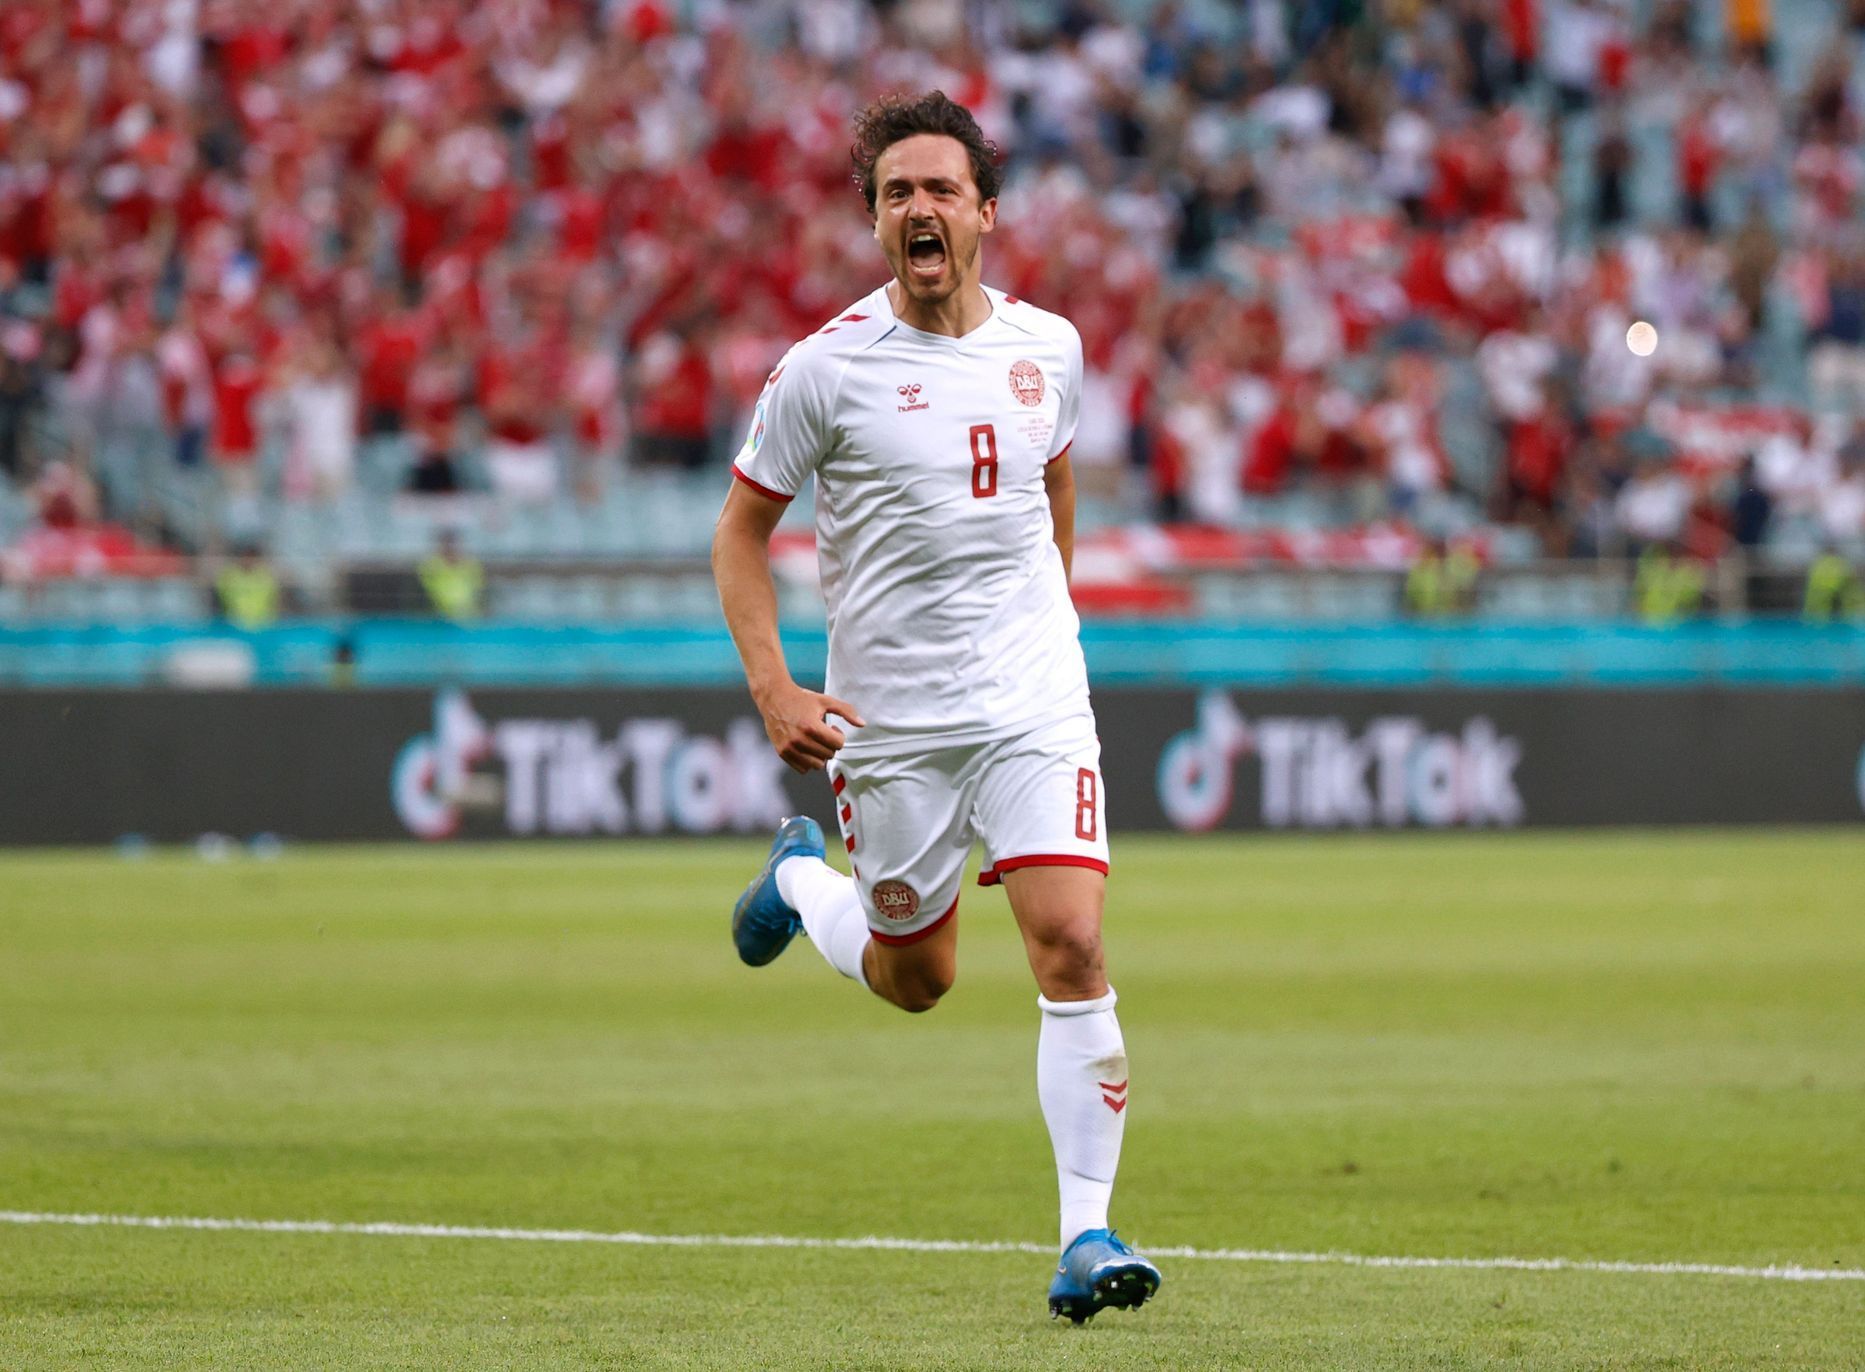 Thomas Delaney slaví gól ve čtvrtfinále Česko - Dánsko na ME 2020